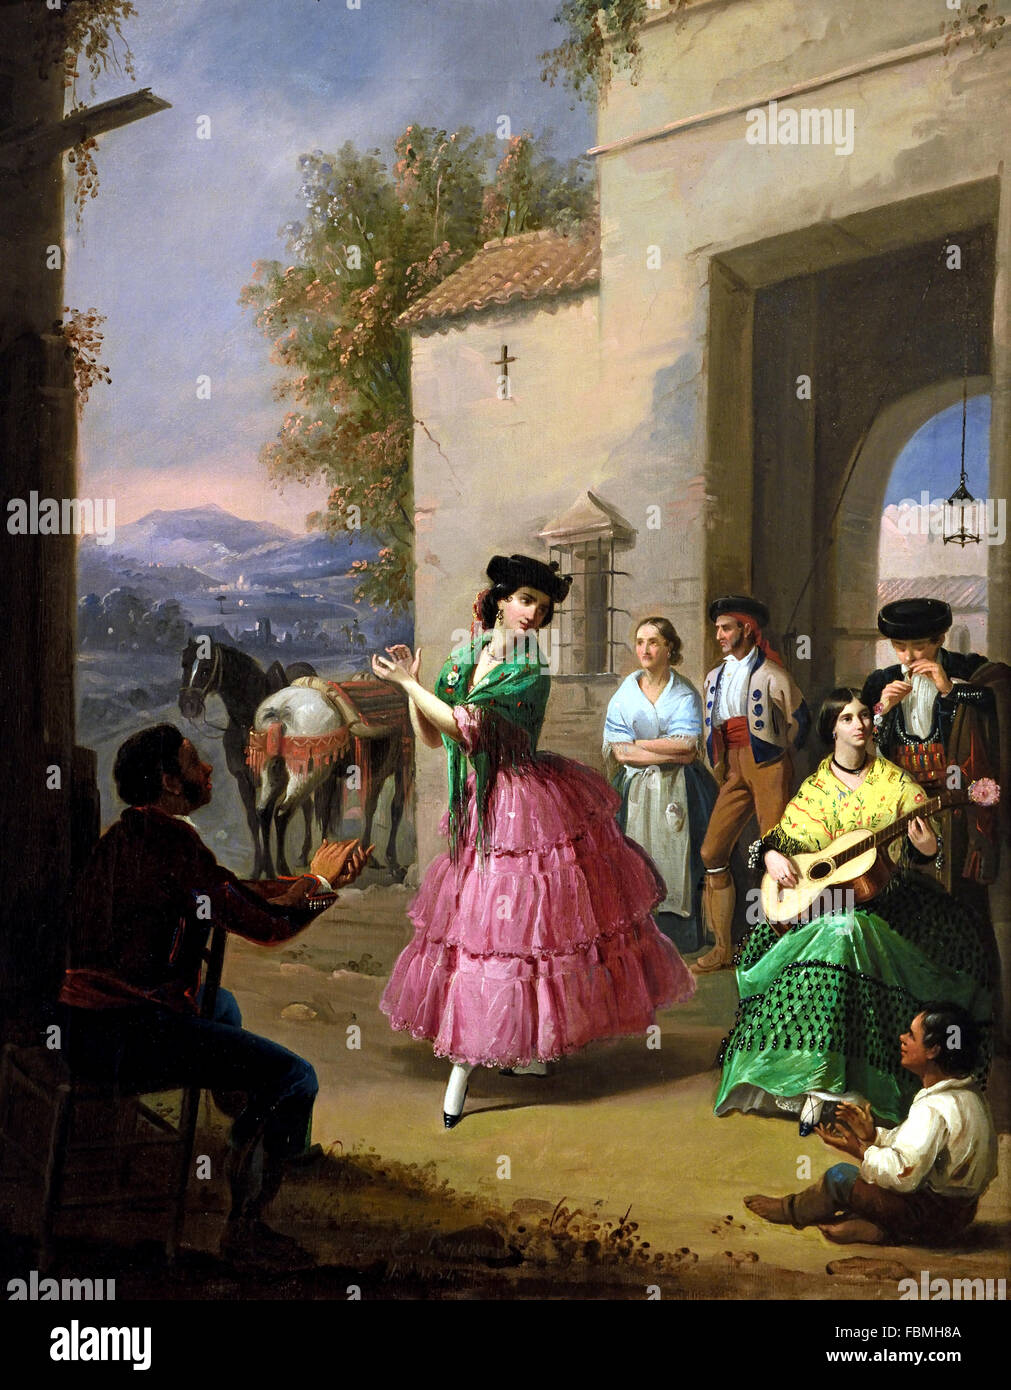 Vor den Toren der Farm 1854 Manuel Cabral Aguado Bejarano 1827-1891 Andalusien Spanisch Spanien jubeln Stockfoto